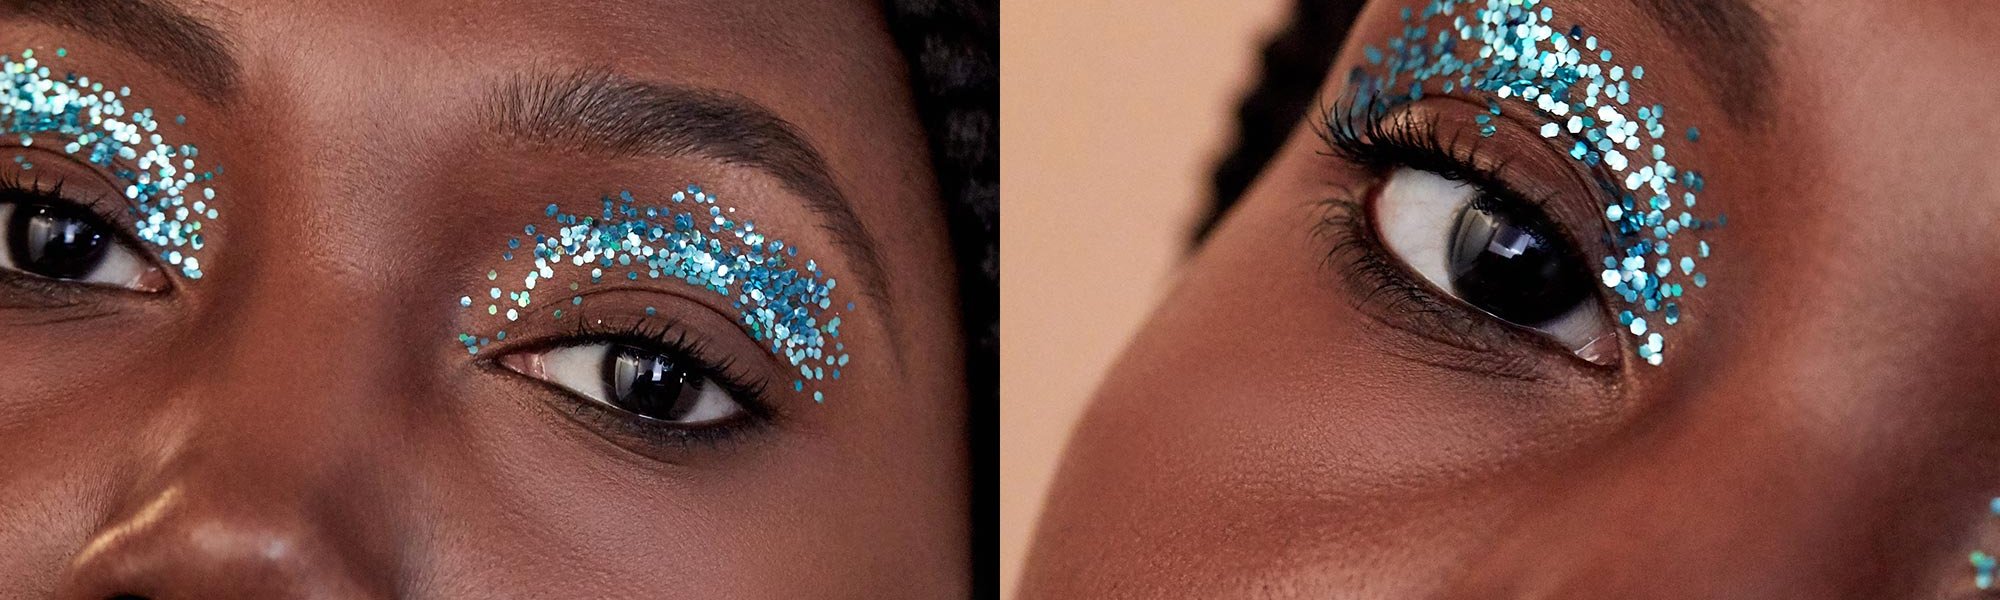 The Eye Makeup Ideas - L'Oréal Paris